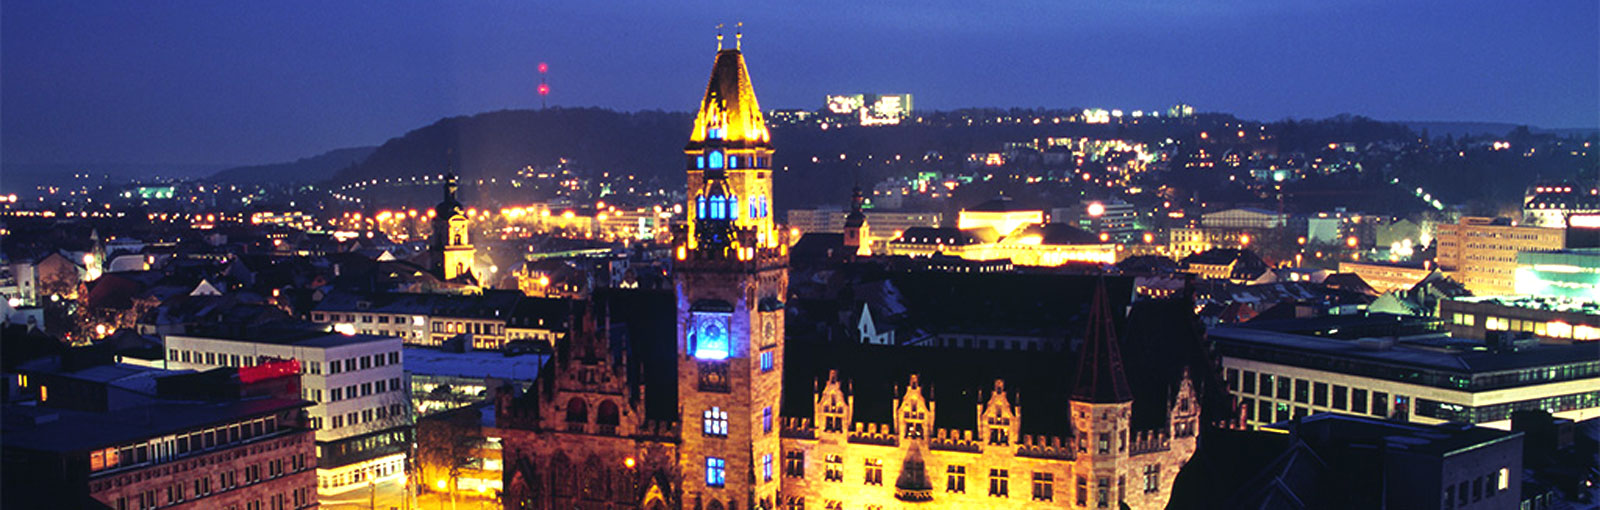 Saarbrücken Rathaus bei Nacht